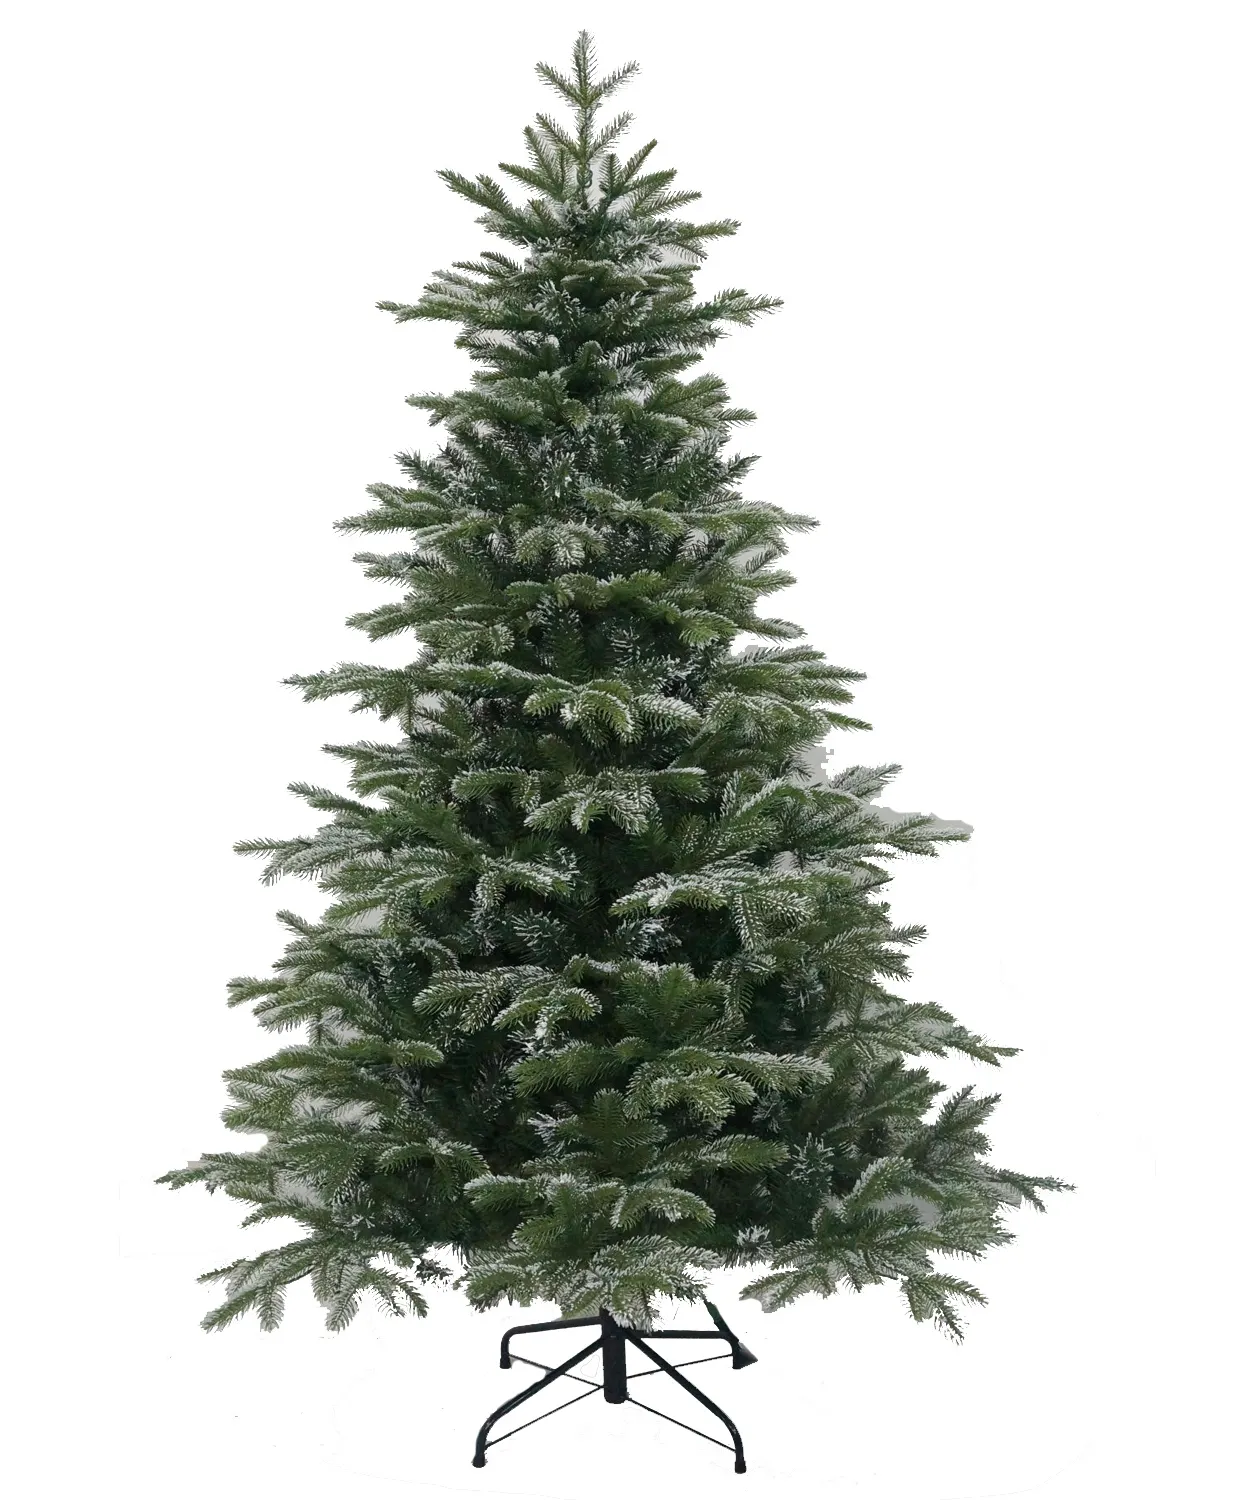 شجرة عيد الميلاد الفاخرة الصناعية عالية الجودة بسعر جيد مقاومة للحرائق من البولي إيثيلين وPVC المختلط صديق البيئة لتزيين المنزل داخل المنزل